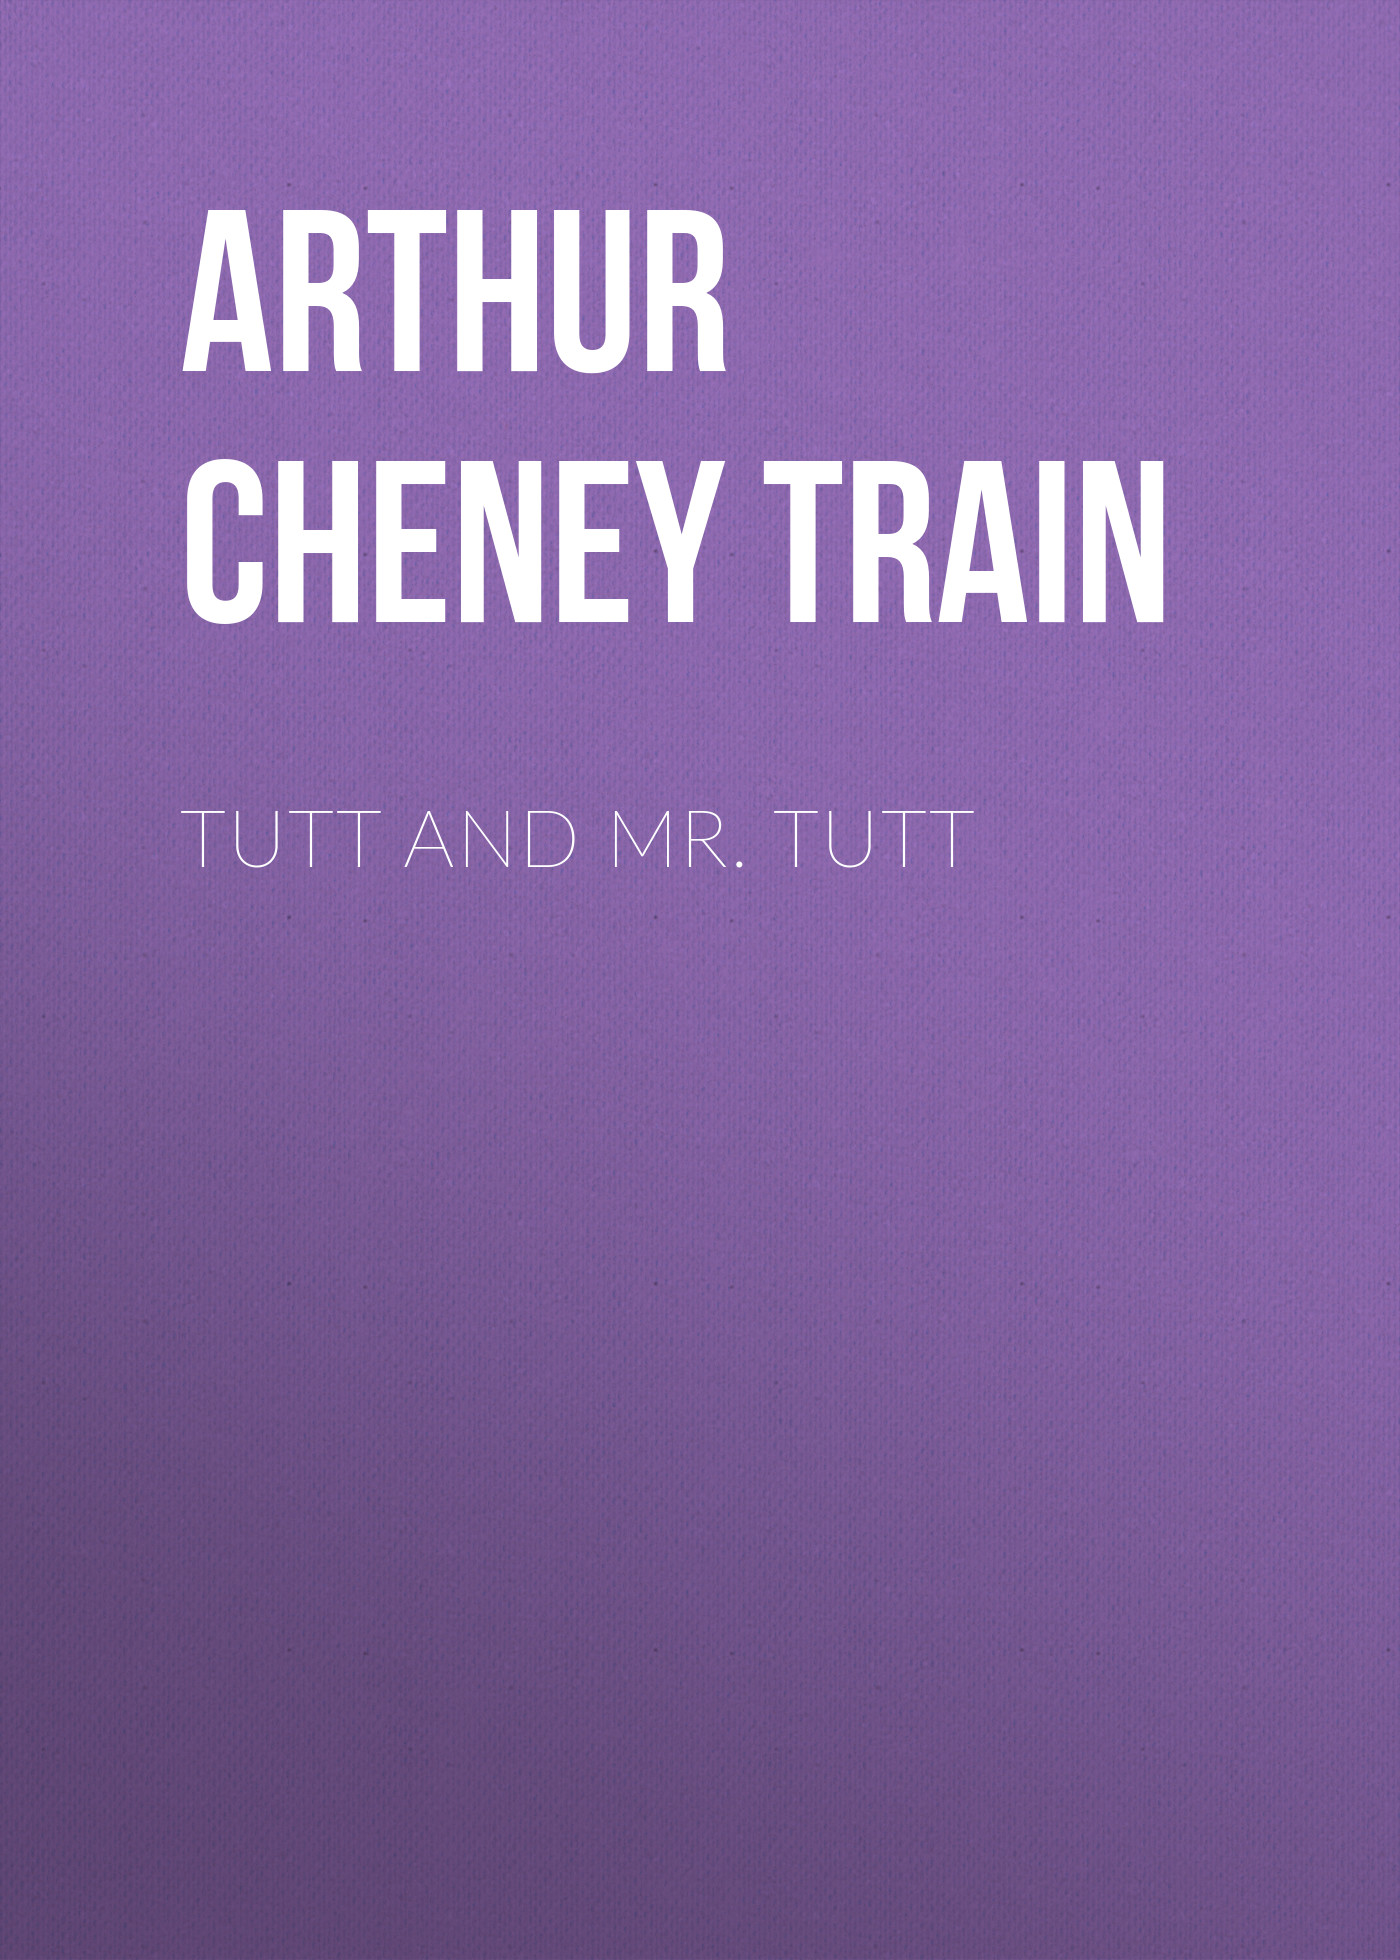 Книга Tutt and Mr. Tutt из серии , созданная Arthur Train, может относится к жанру Зарубежная образовательная литература, Юриспруденция, право. Стоимость электронной книги Tutt and Mr. Tutt с идентификатором 36364630 составляет 0 руб.